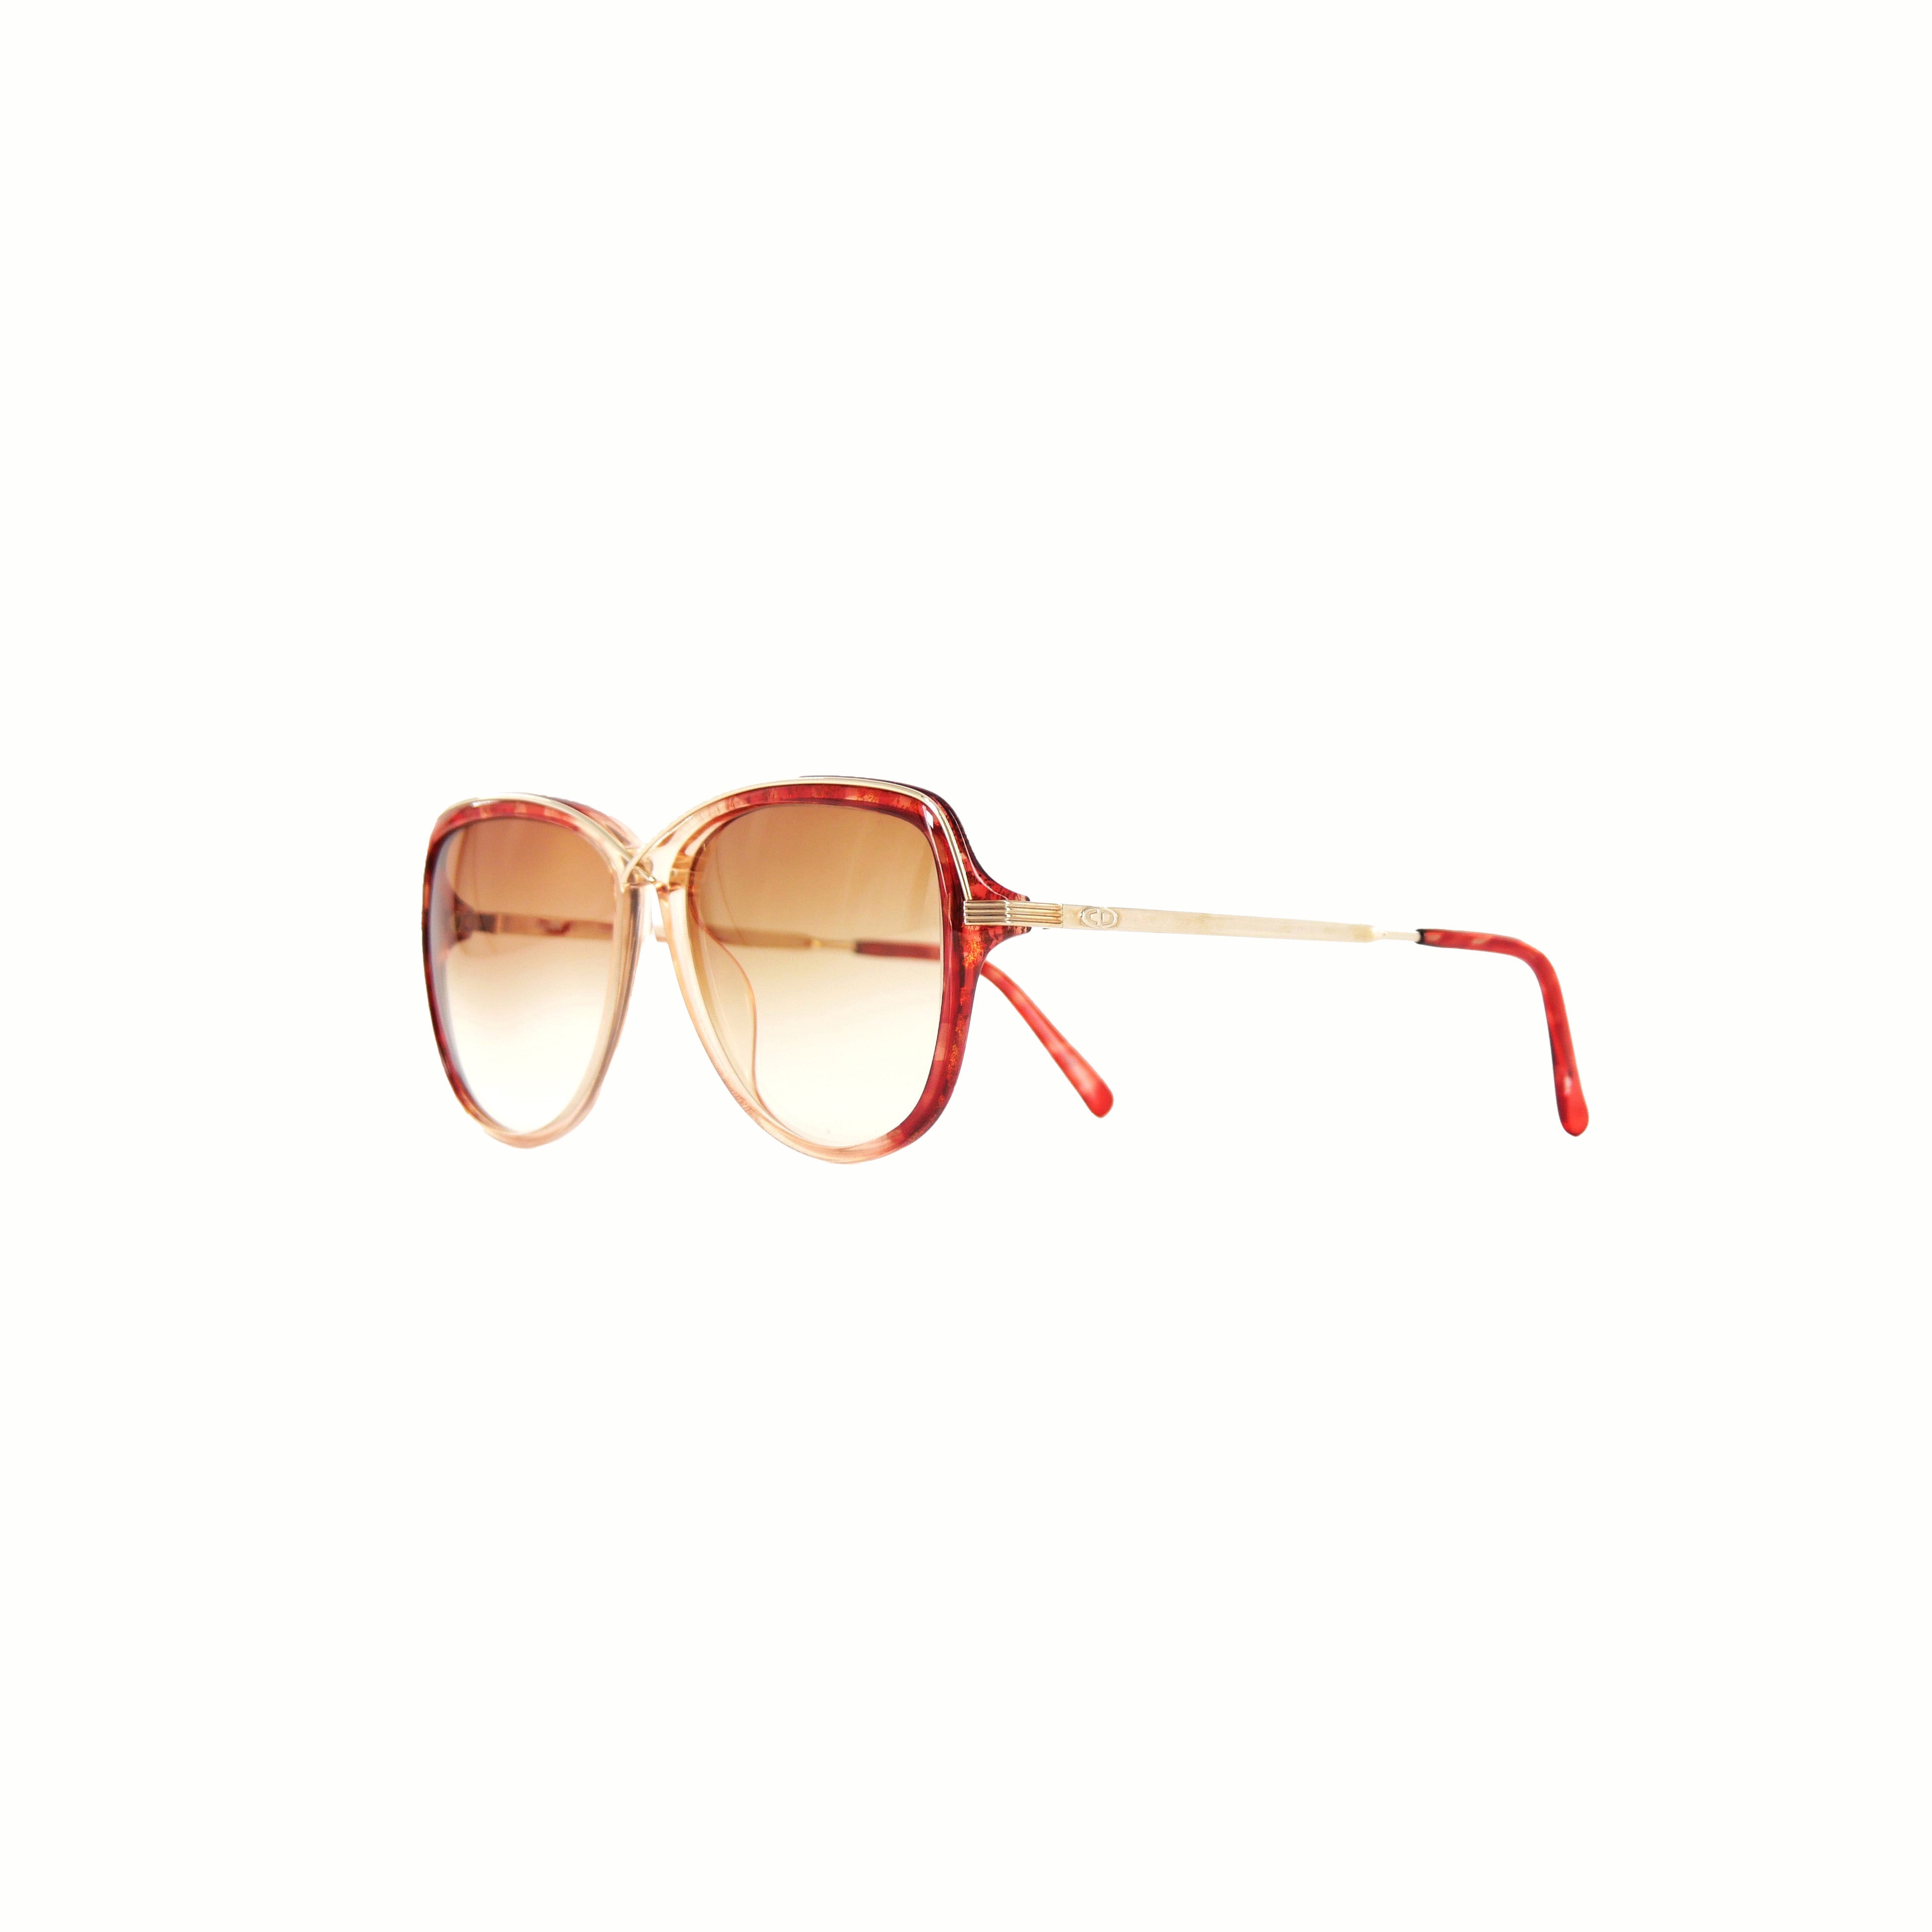 Retro Sun[レトロ サン] / Dior Sunglasses② [ディオール サングラス]